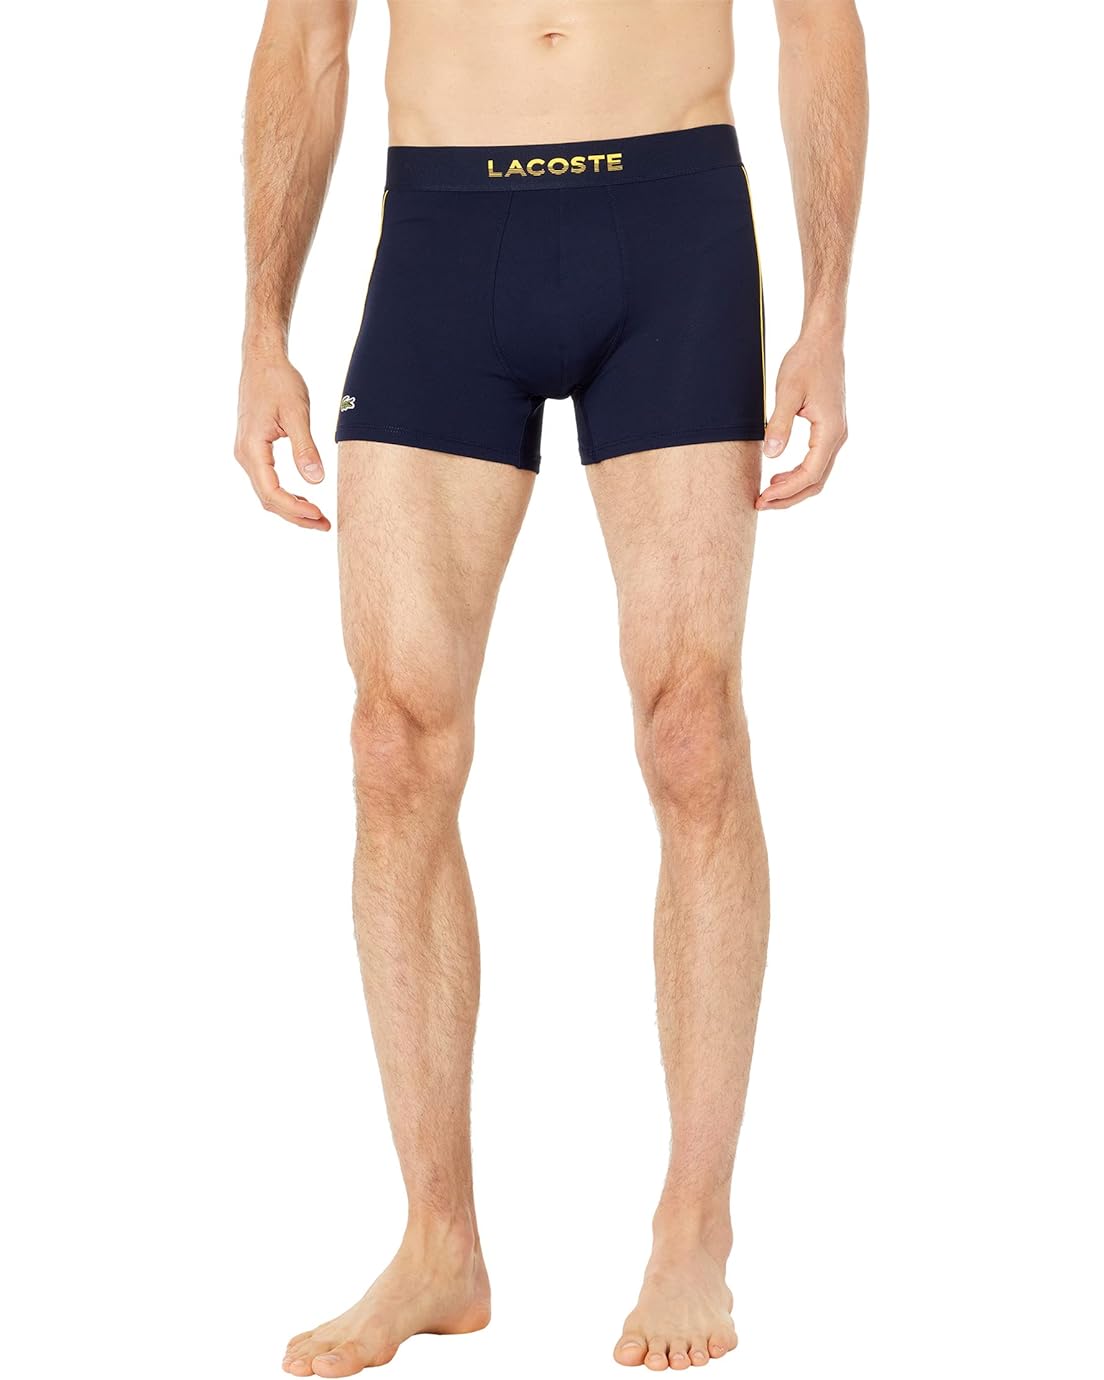 Lacoste Semi Fancy Underwear Trunks